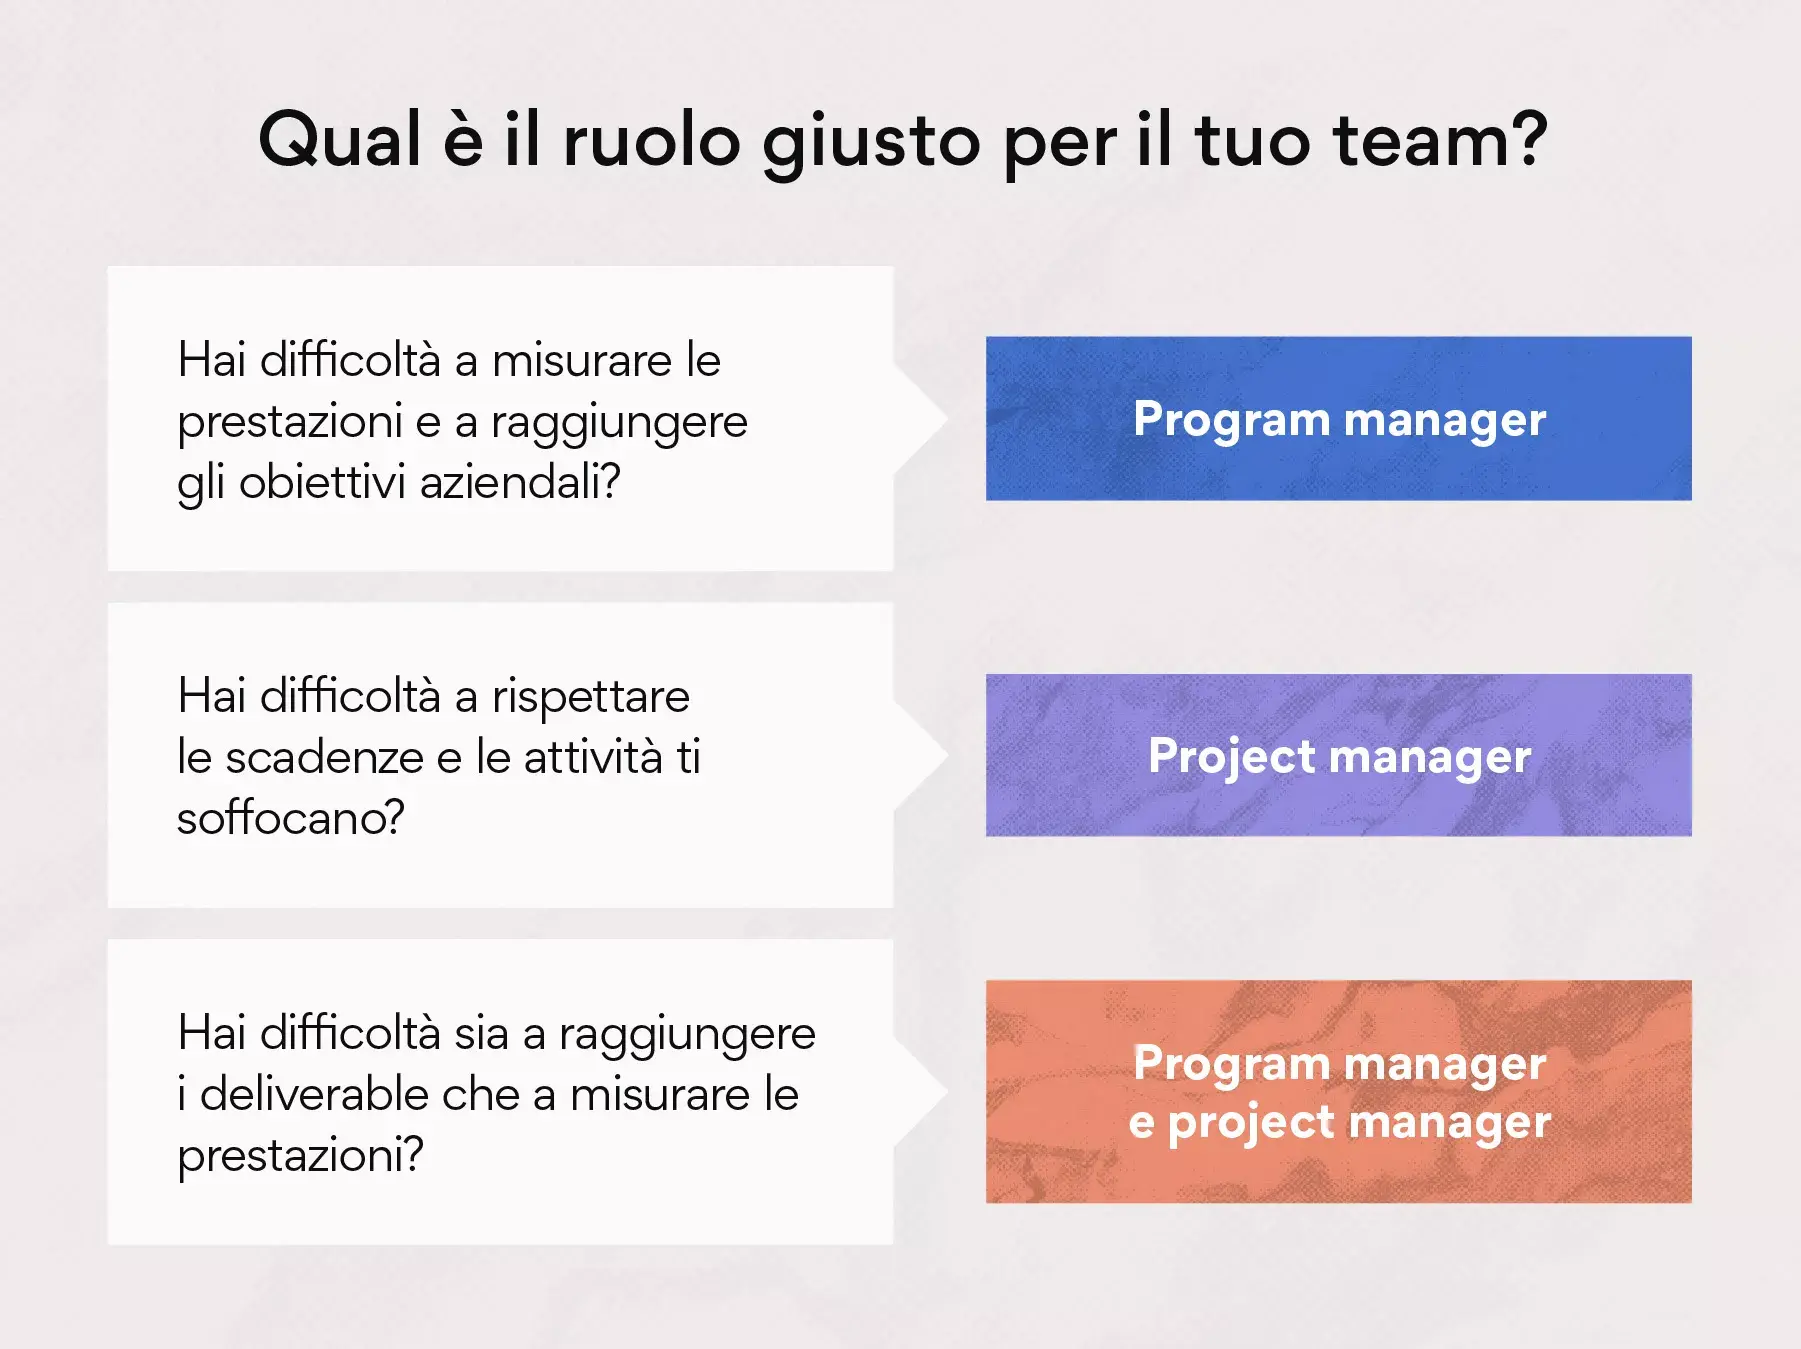 Qual è il ruolo giusto per il tuo team: program manager o project manager?